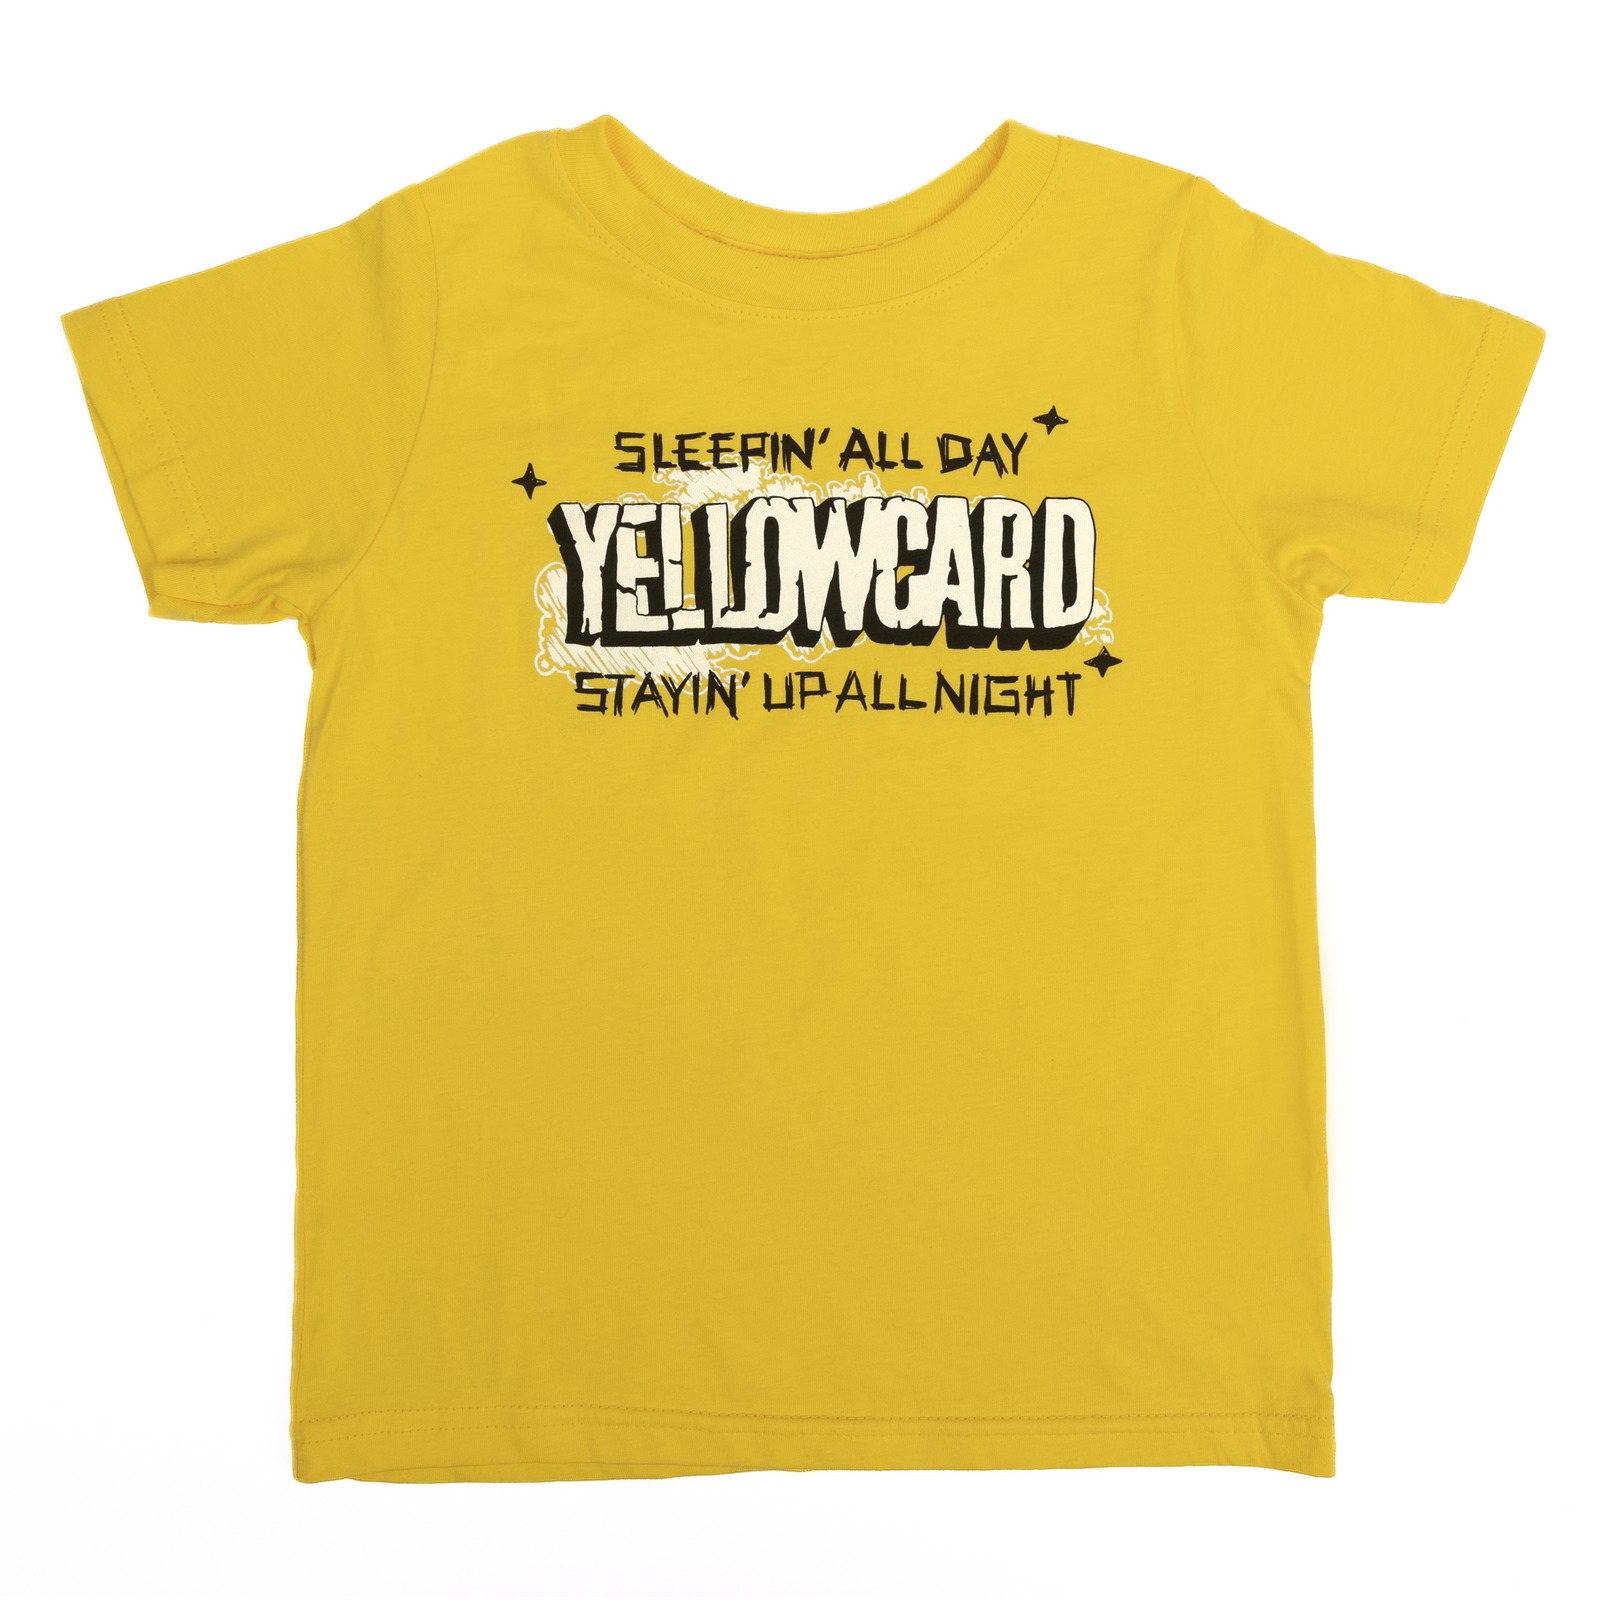 Yellowcard Toddler T-Shirt